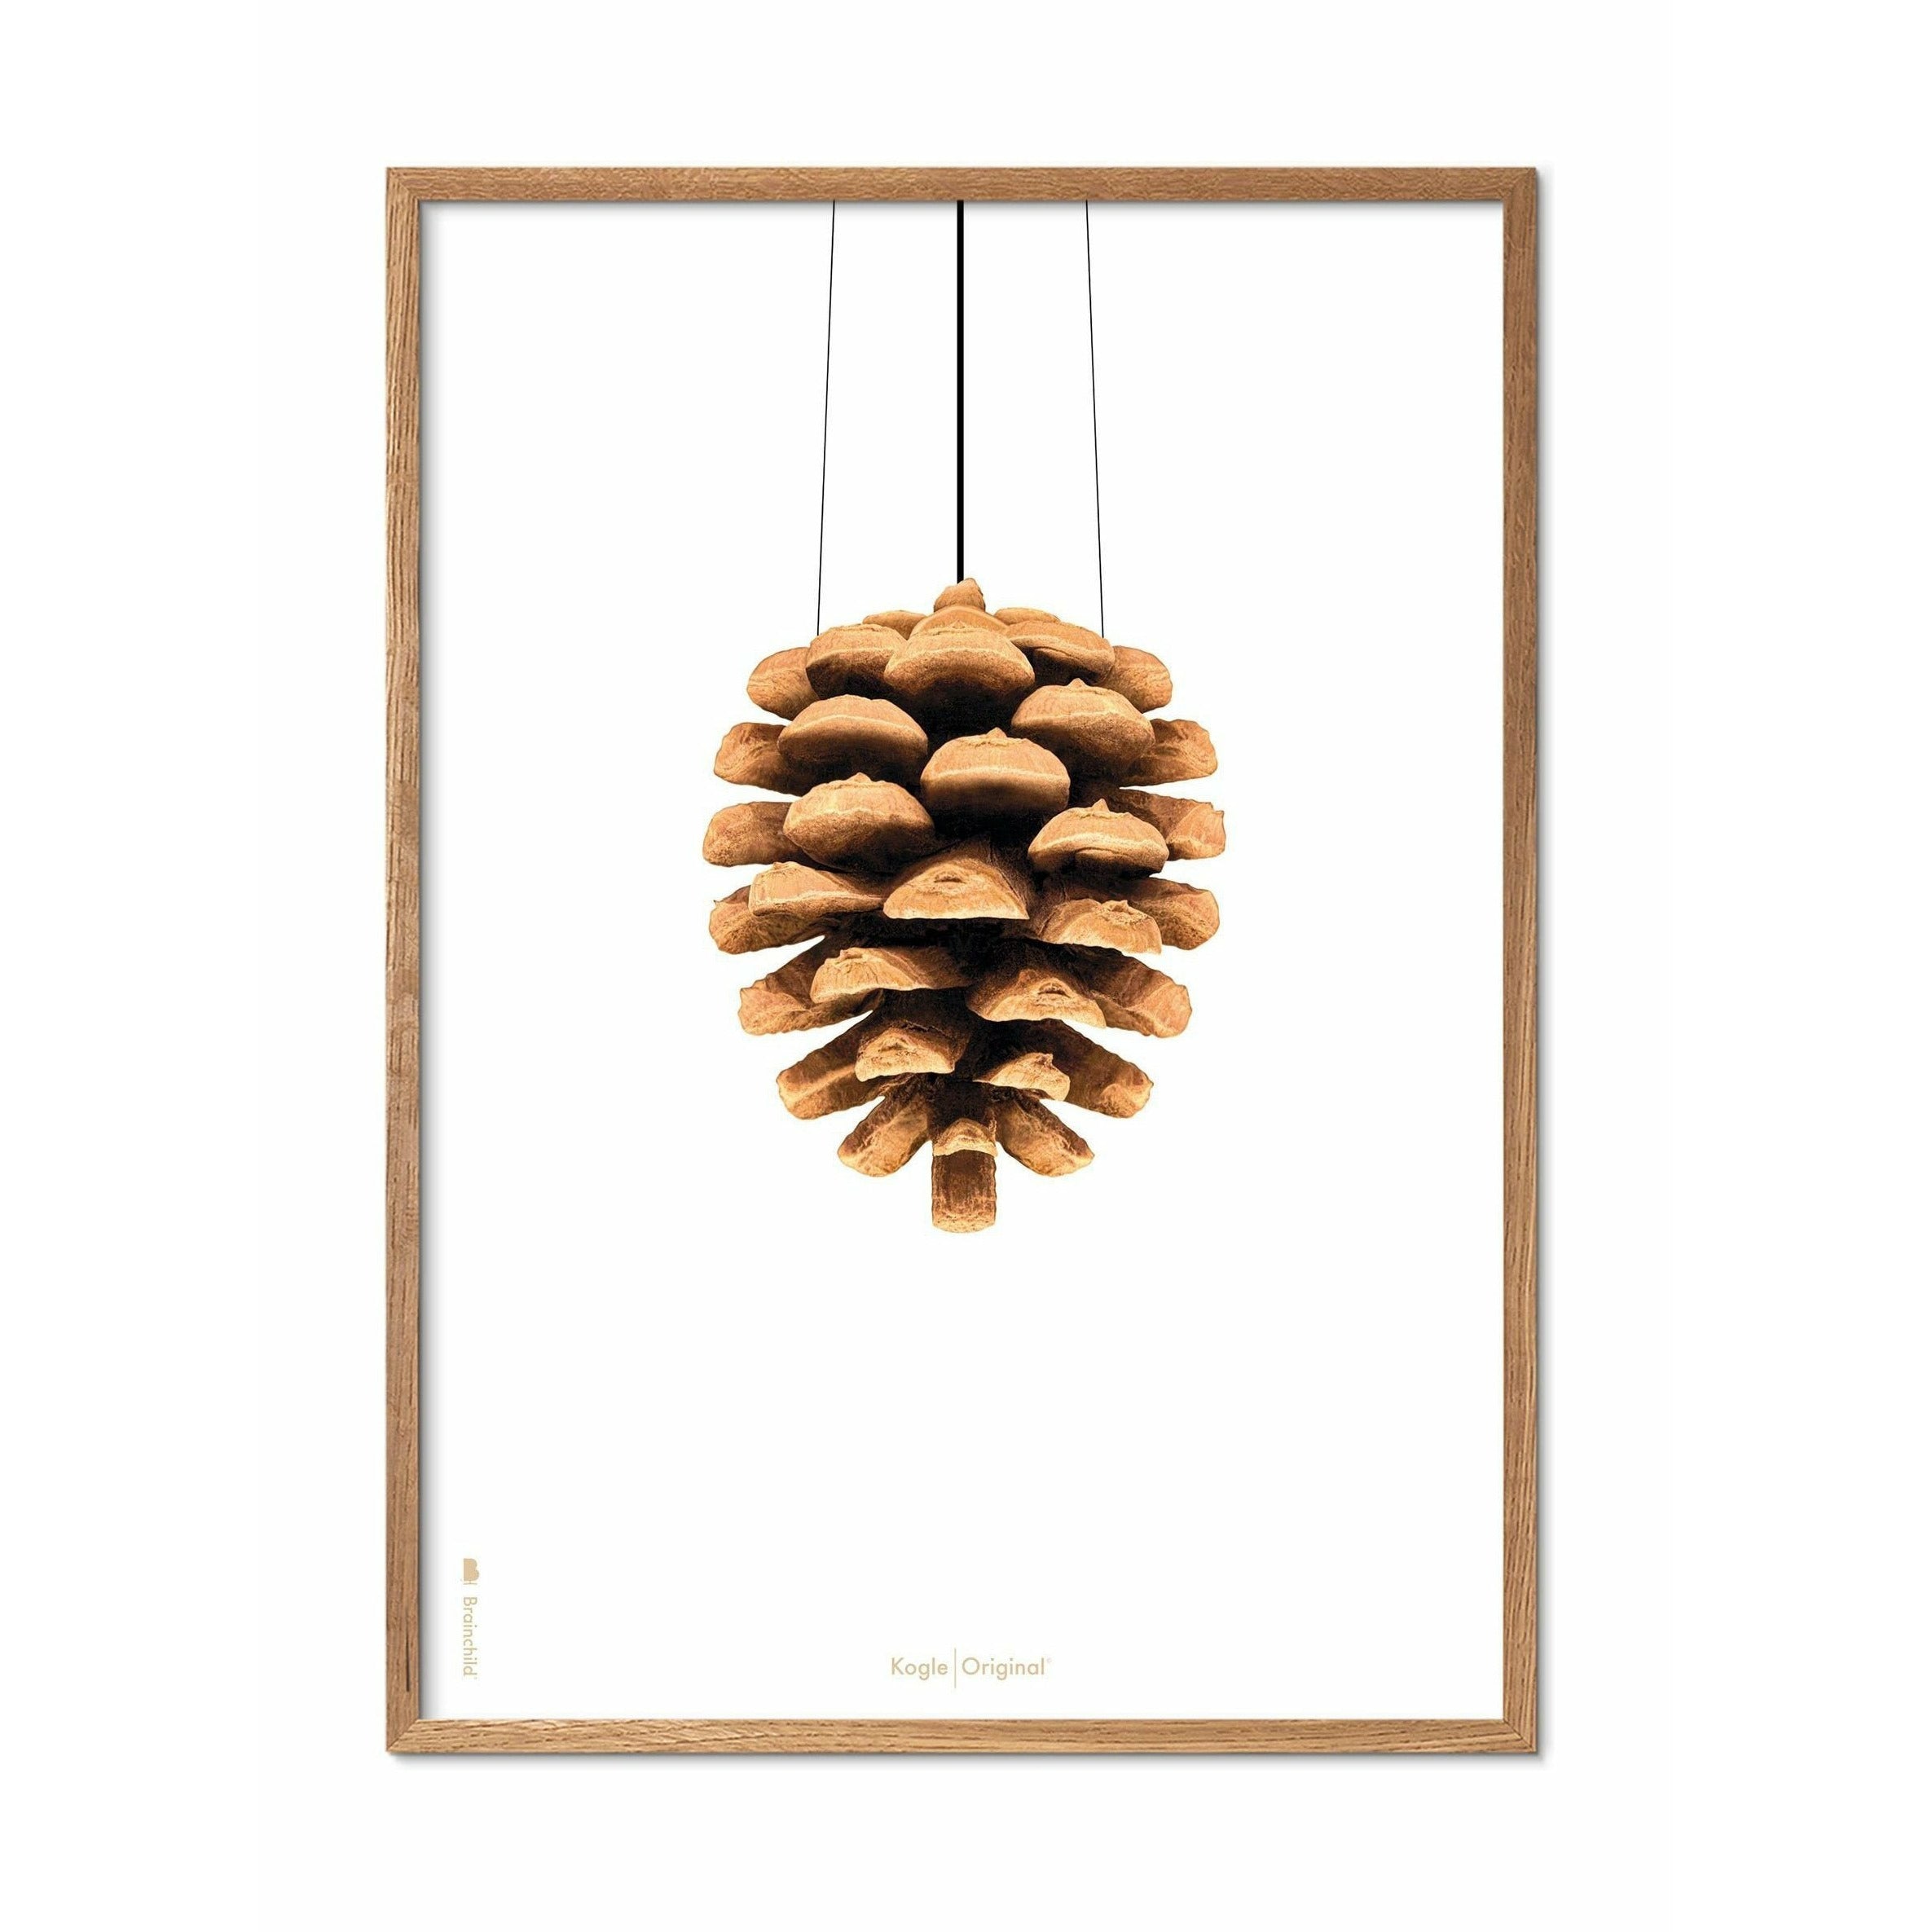 Póster clásico de cono de pino de creación, marco hecho de madera clara de 70x100 cm, fondo blanco